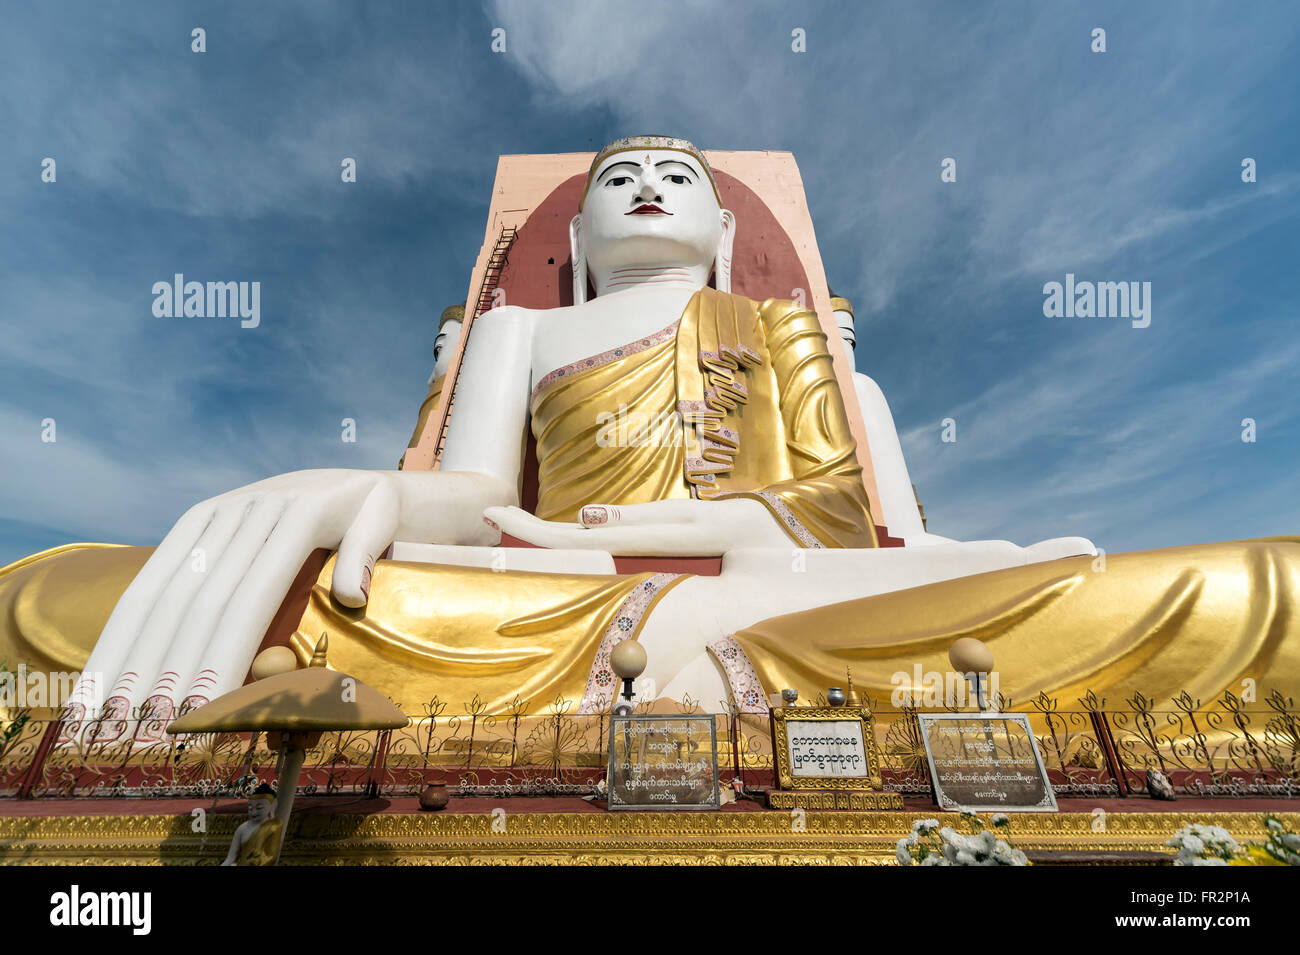 Faible angle de vue de la statue de Bouddha à la Pagode Kyaikpun à Bago, Birmanie (Myanmar) Banque D'Images